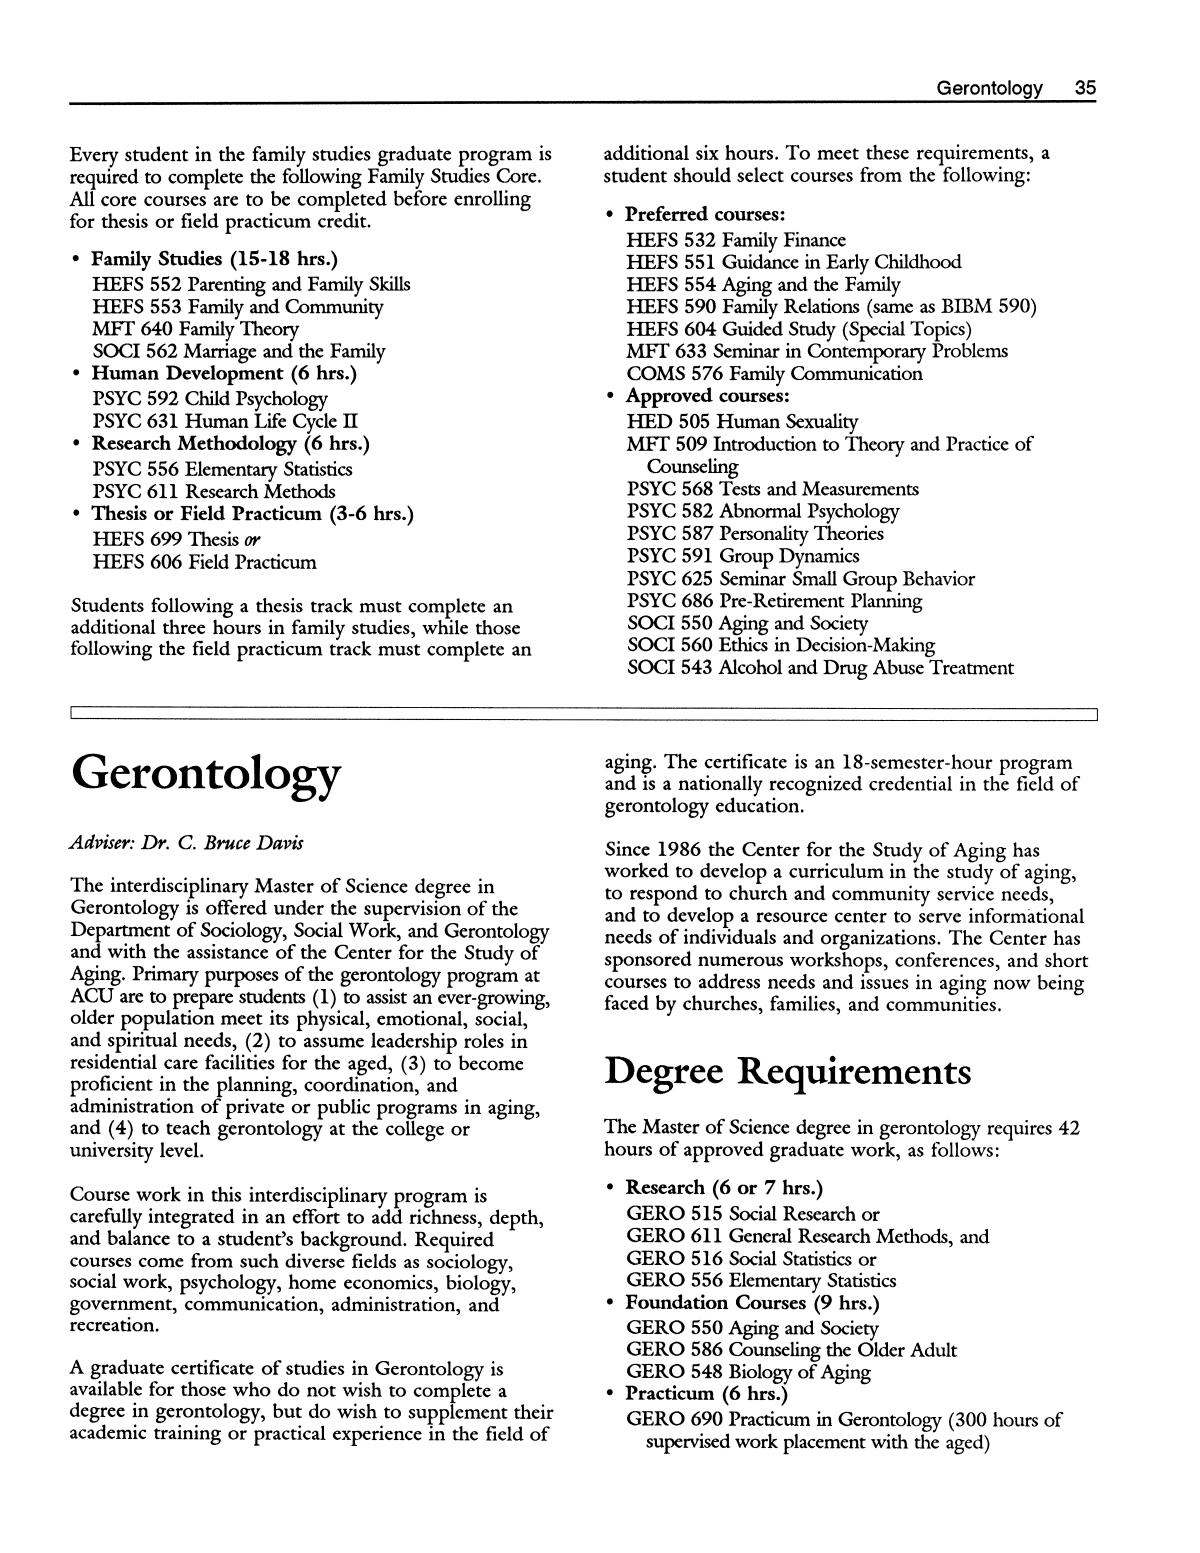 Catalog of Abilene Christian University, 1991-1992
                                                
                                                    35
                                                